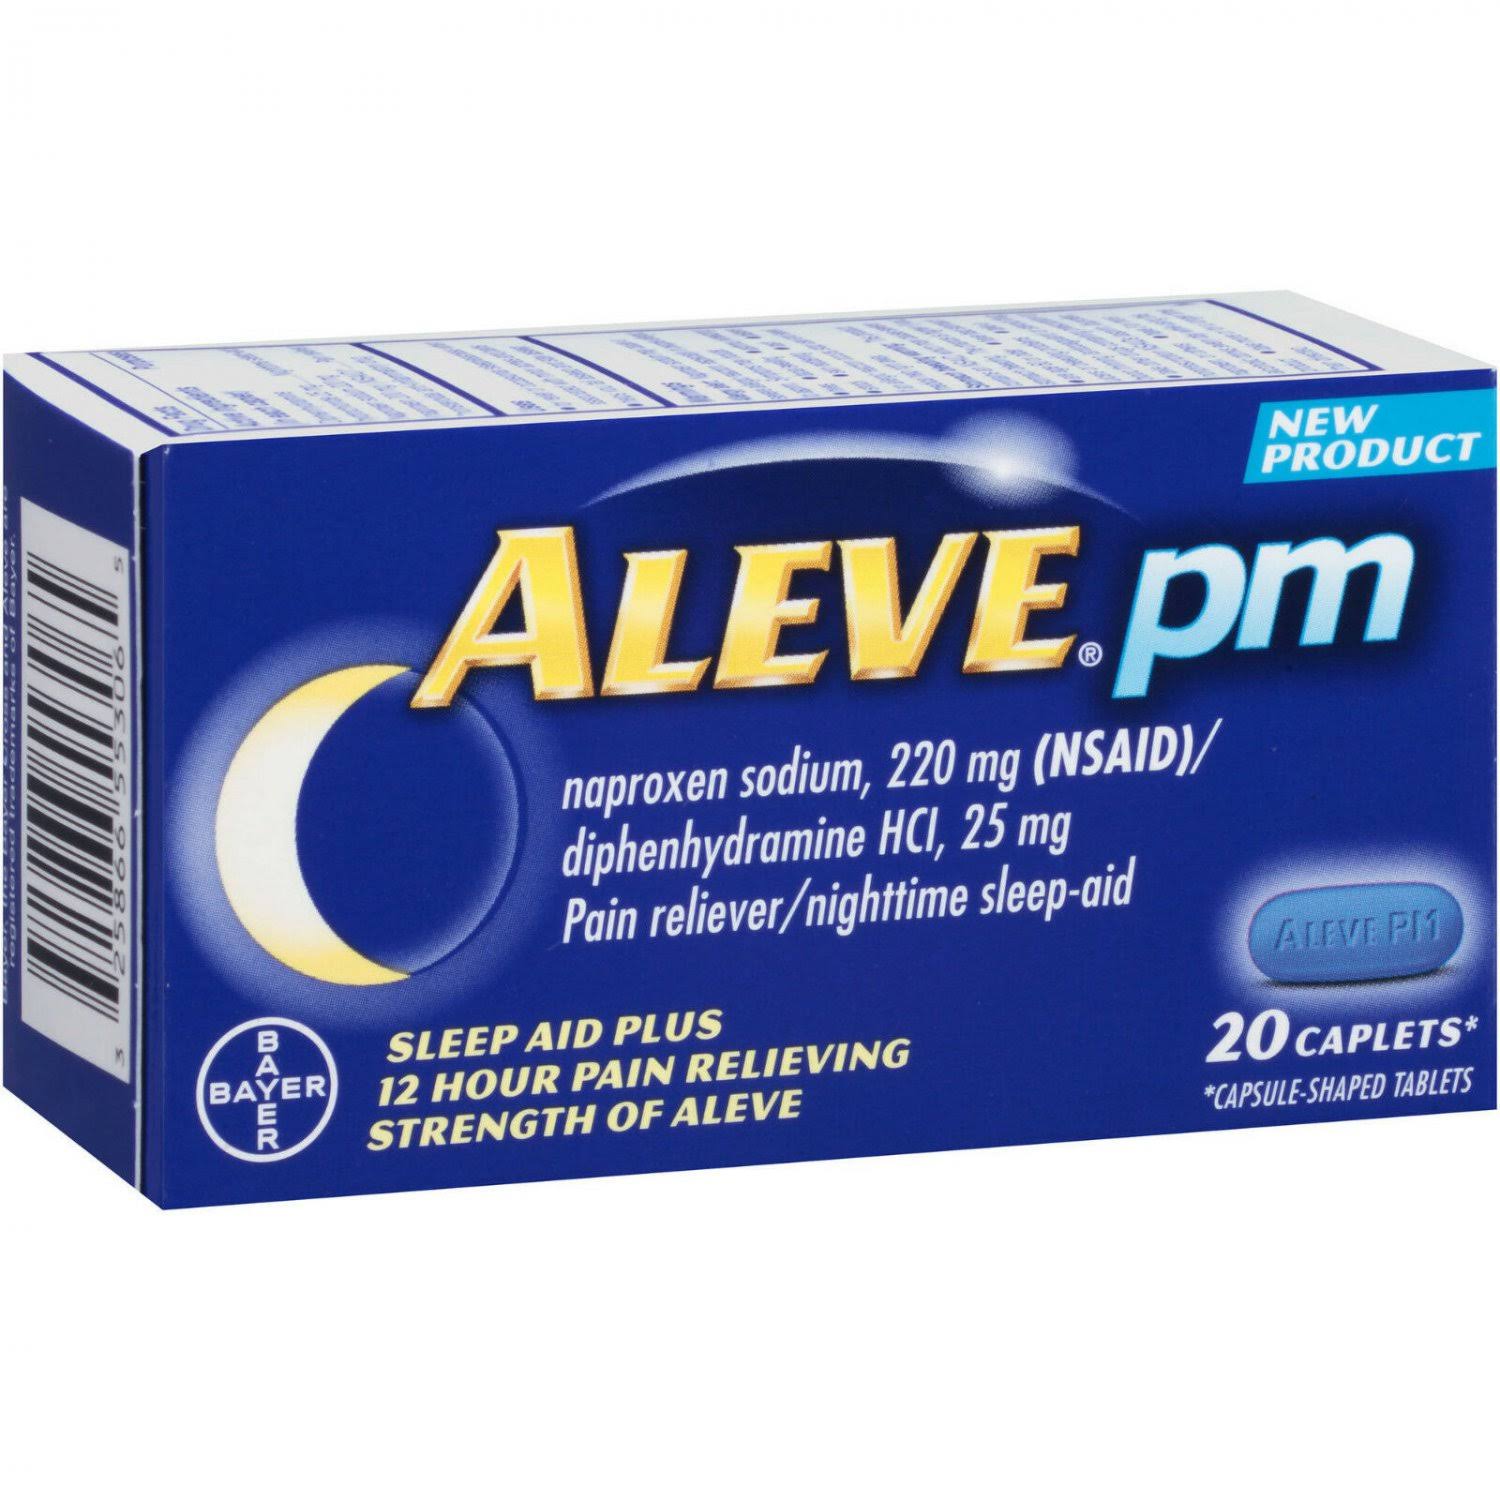 Bayer Aleve PM Sleep Aid - 20 Caplets